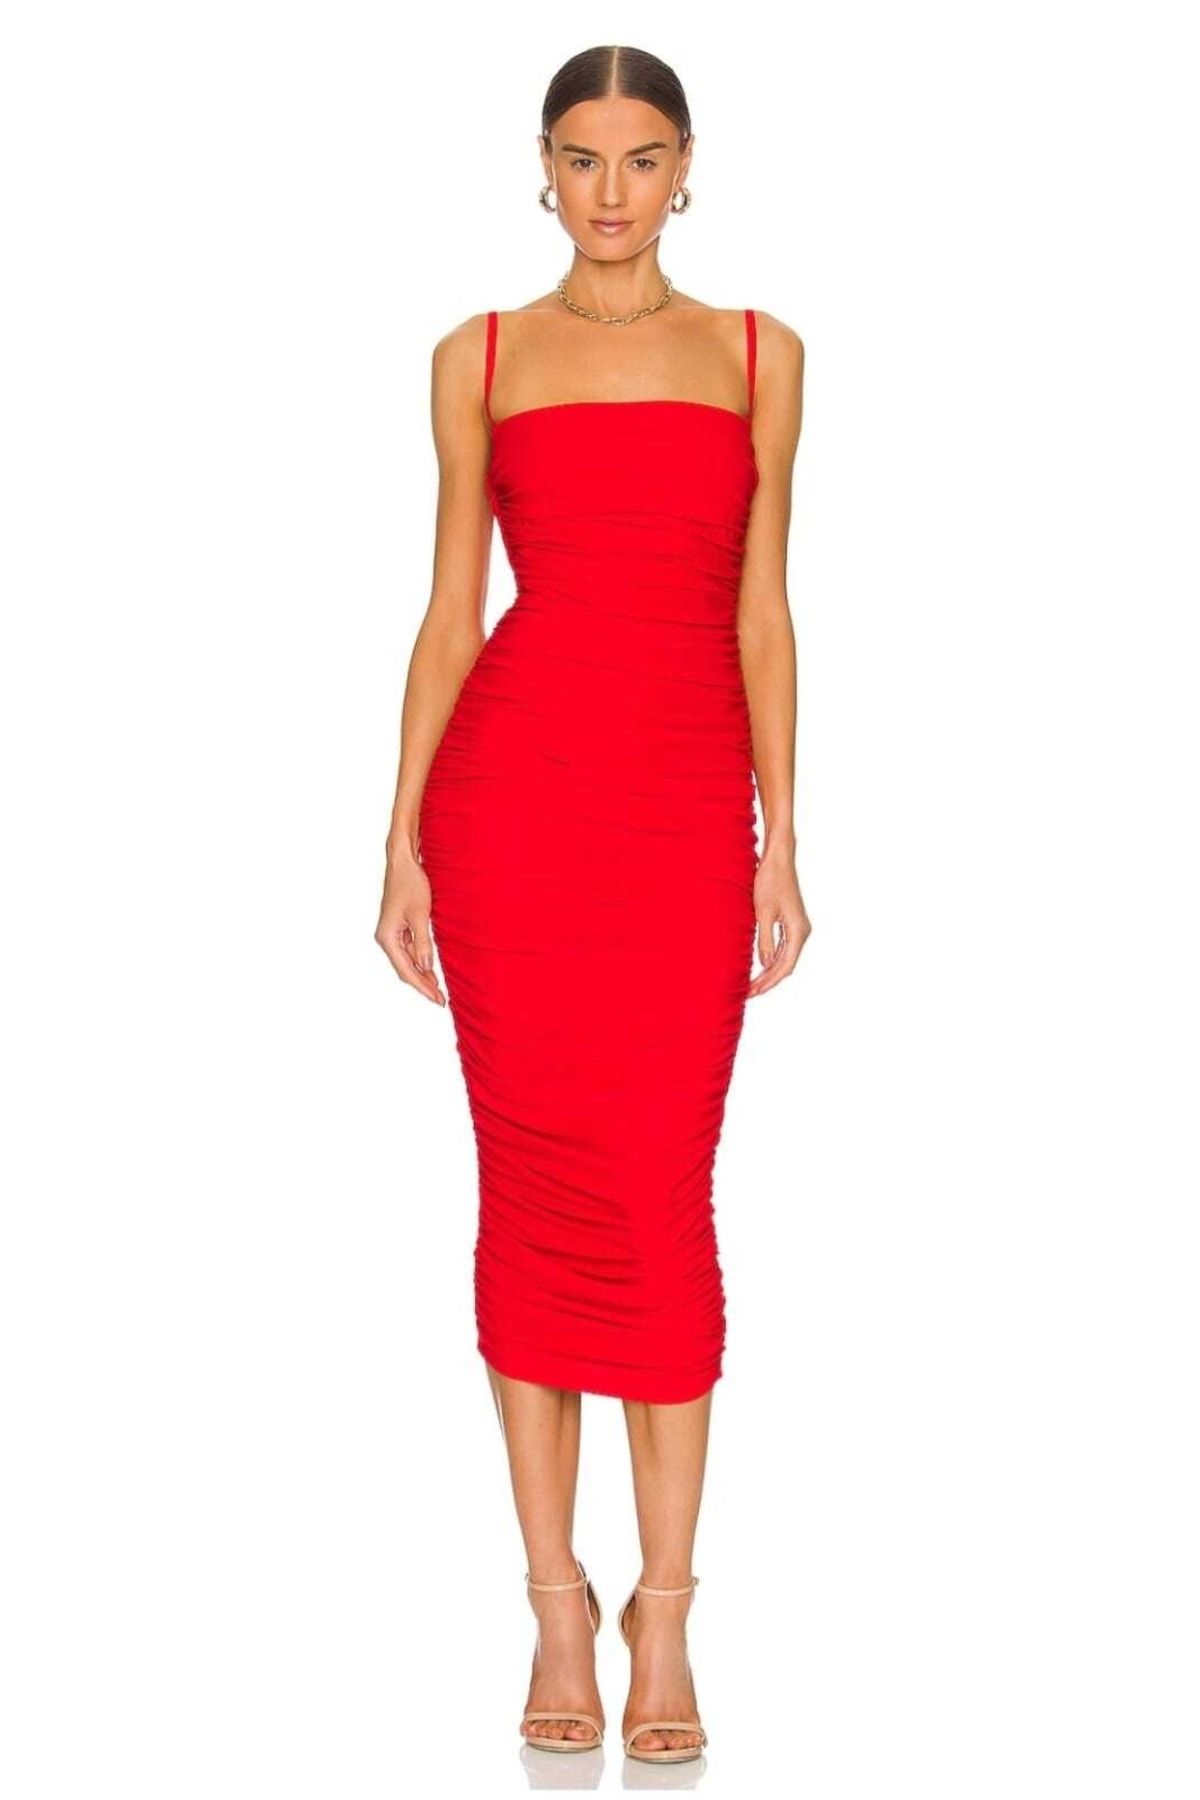 Zagrep Kadın Kırmızı Askılı Büzgülü Midi Elbise Astarlı Iç Göstermez